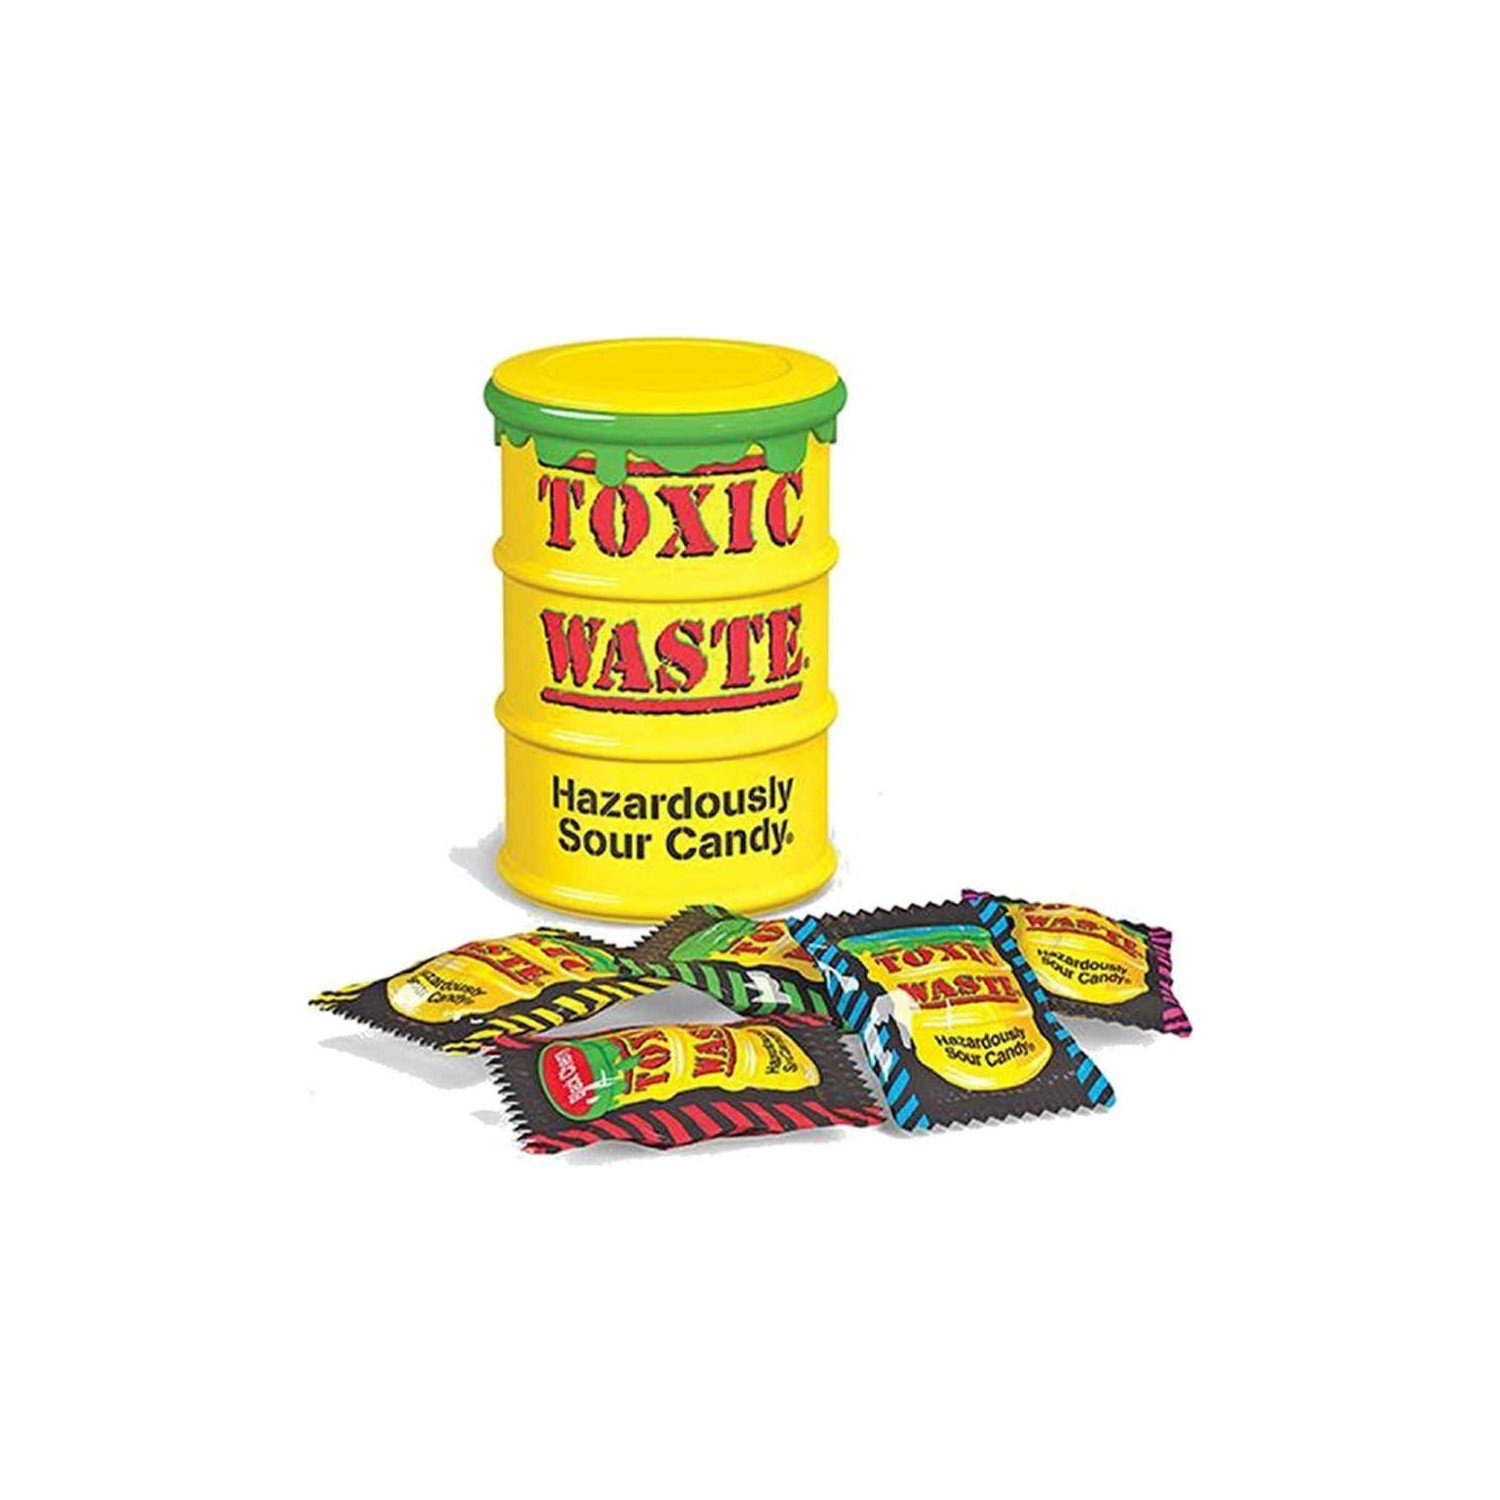 Токсик конфеты. Toxic waste конфеты. Леденцы Toxic waste. Кислые конфеты Toxic waste. Конфеты Токсик Вейст вкусы.